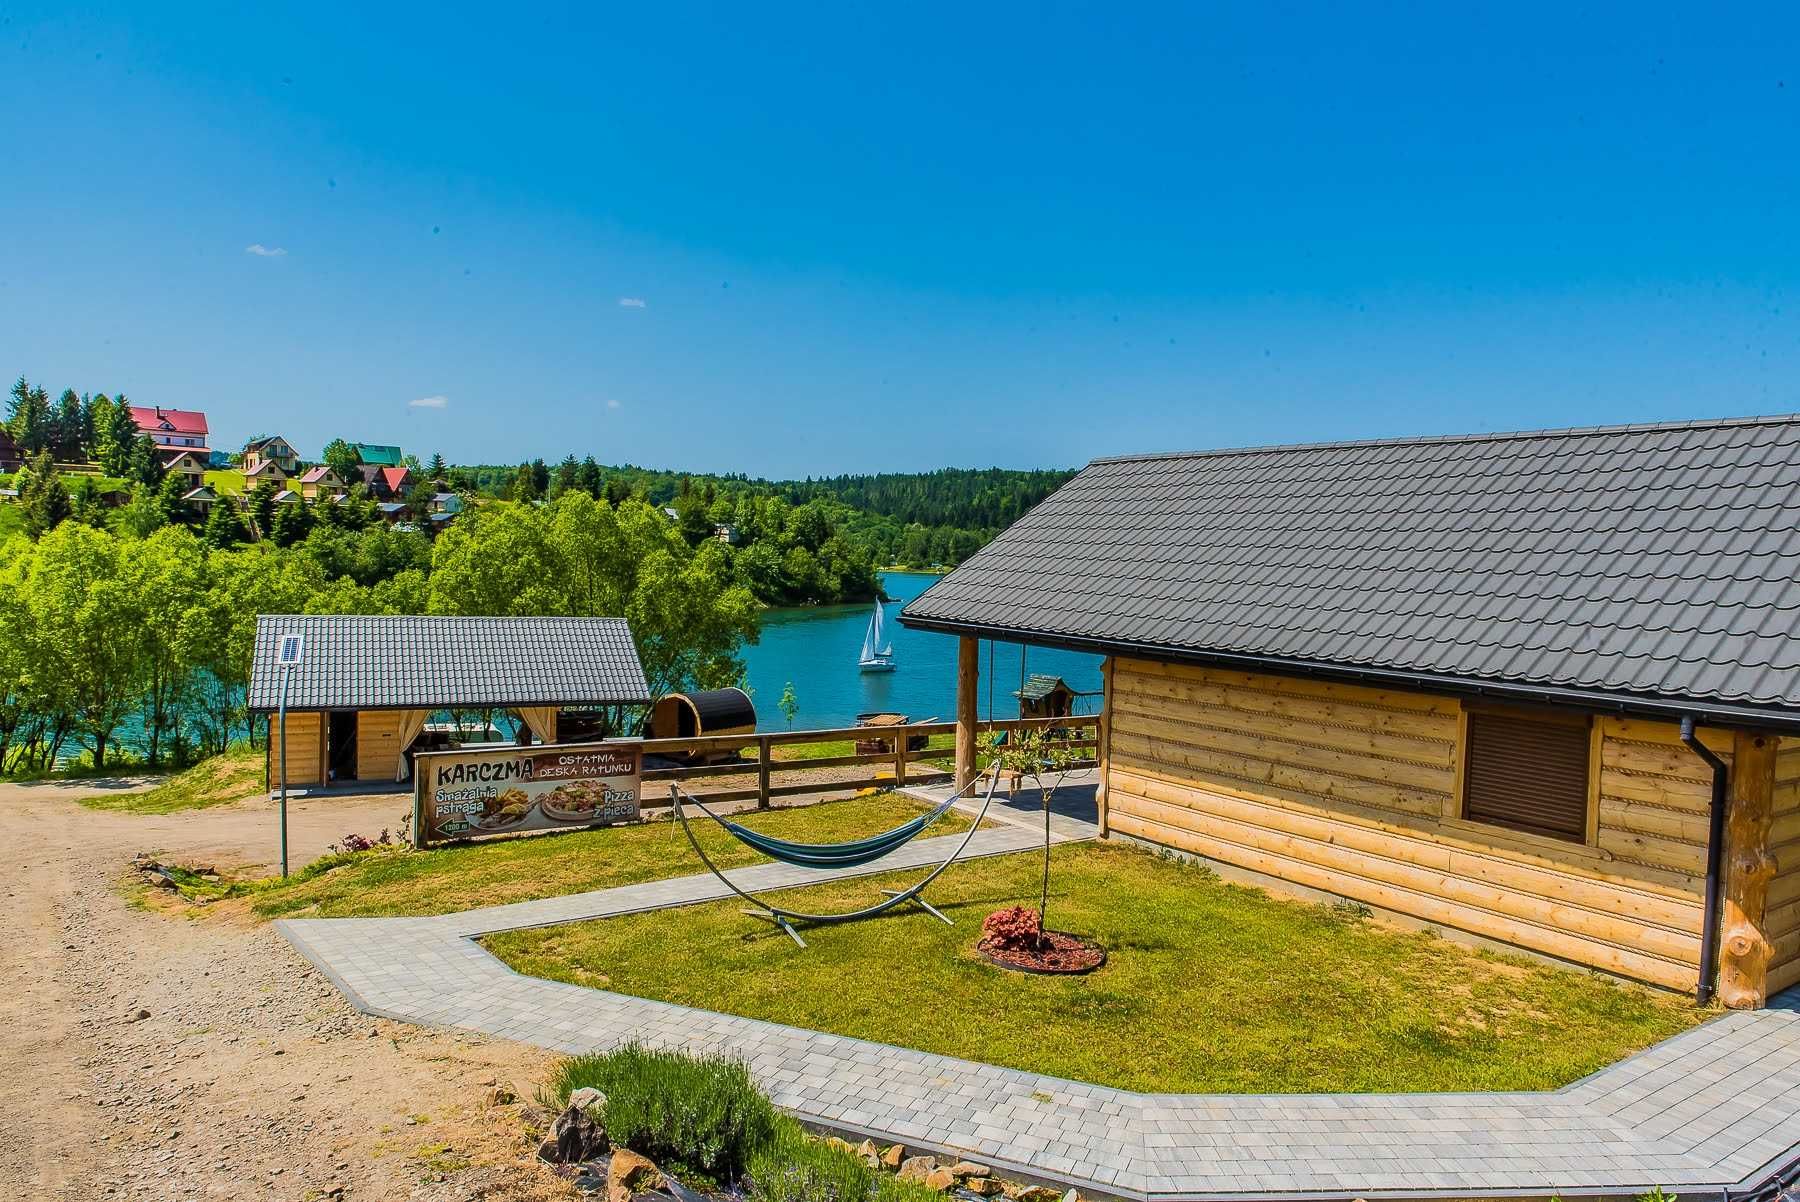 Dom nad morzem Bieszczadzkim Jacuzzi sauna 40 m jezioro prywatna plaża